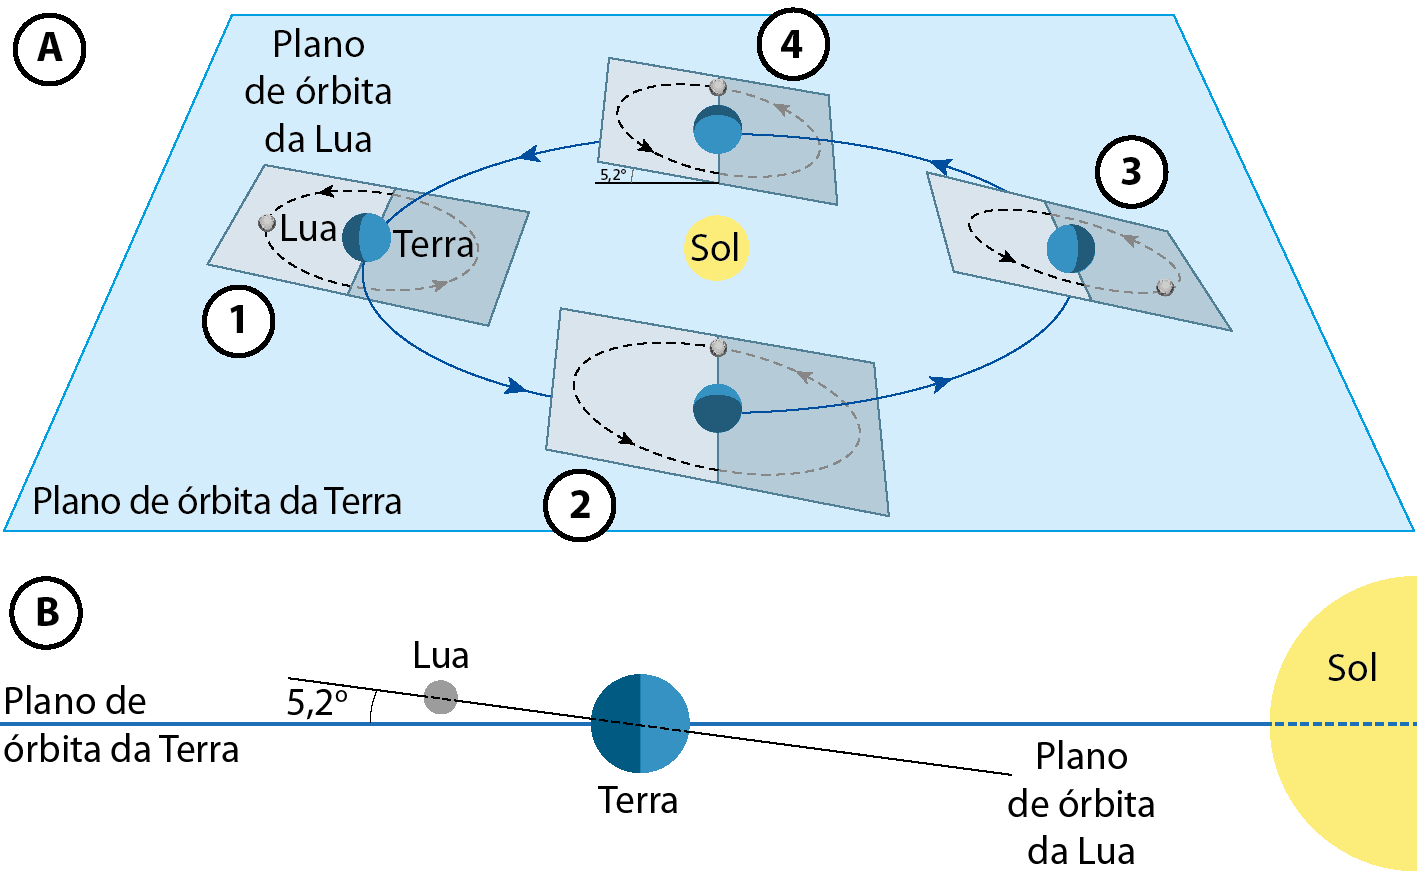 Ilustração A. Uma placa quadrada azul, indicada como Plano de órbita do planeta Terra. O Sol está ao centro, e a Terra aparece em quatro posições equidistantes ao redor do Sol, numeradas de um a quatro e ligadas por uma linha azul, contínua e circular, indicando o trajeto de sua órbita em torno do Sol. Cada representação da Terra é atravessada por uma placa quadrada cinza, inclinada em relação ao plano de órbita da Terra, indicada como plano de órbita da Lua. Em uma dessas representações há a indicação de um ângulo formado pela intersecção dos dois planos: 5,2 graus. Em cada representação do plano de órbita da Lua há uma representação da Lua próxima à Terra e uma linha pontilhada circular indicando seu trajeto em torno da Terra. Ilustração B. Há uma linha na horizontal por toda a extensão da ilustração indicada como 'Plano de órbita da Terra'. No centro dessa linha há o planeta Terra e, à direita, o Sol. Há uma linha cruzando o plano de órbita da Terra com a indicação de 5,2 graus de inclinação nomeada como 'Plano de órbita da Lua'. Próxima à Terra e sobre essa segunda linha, está a Lua.